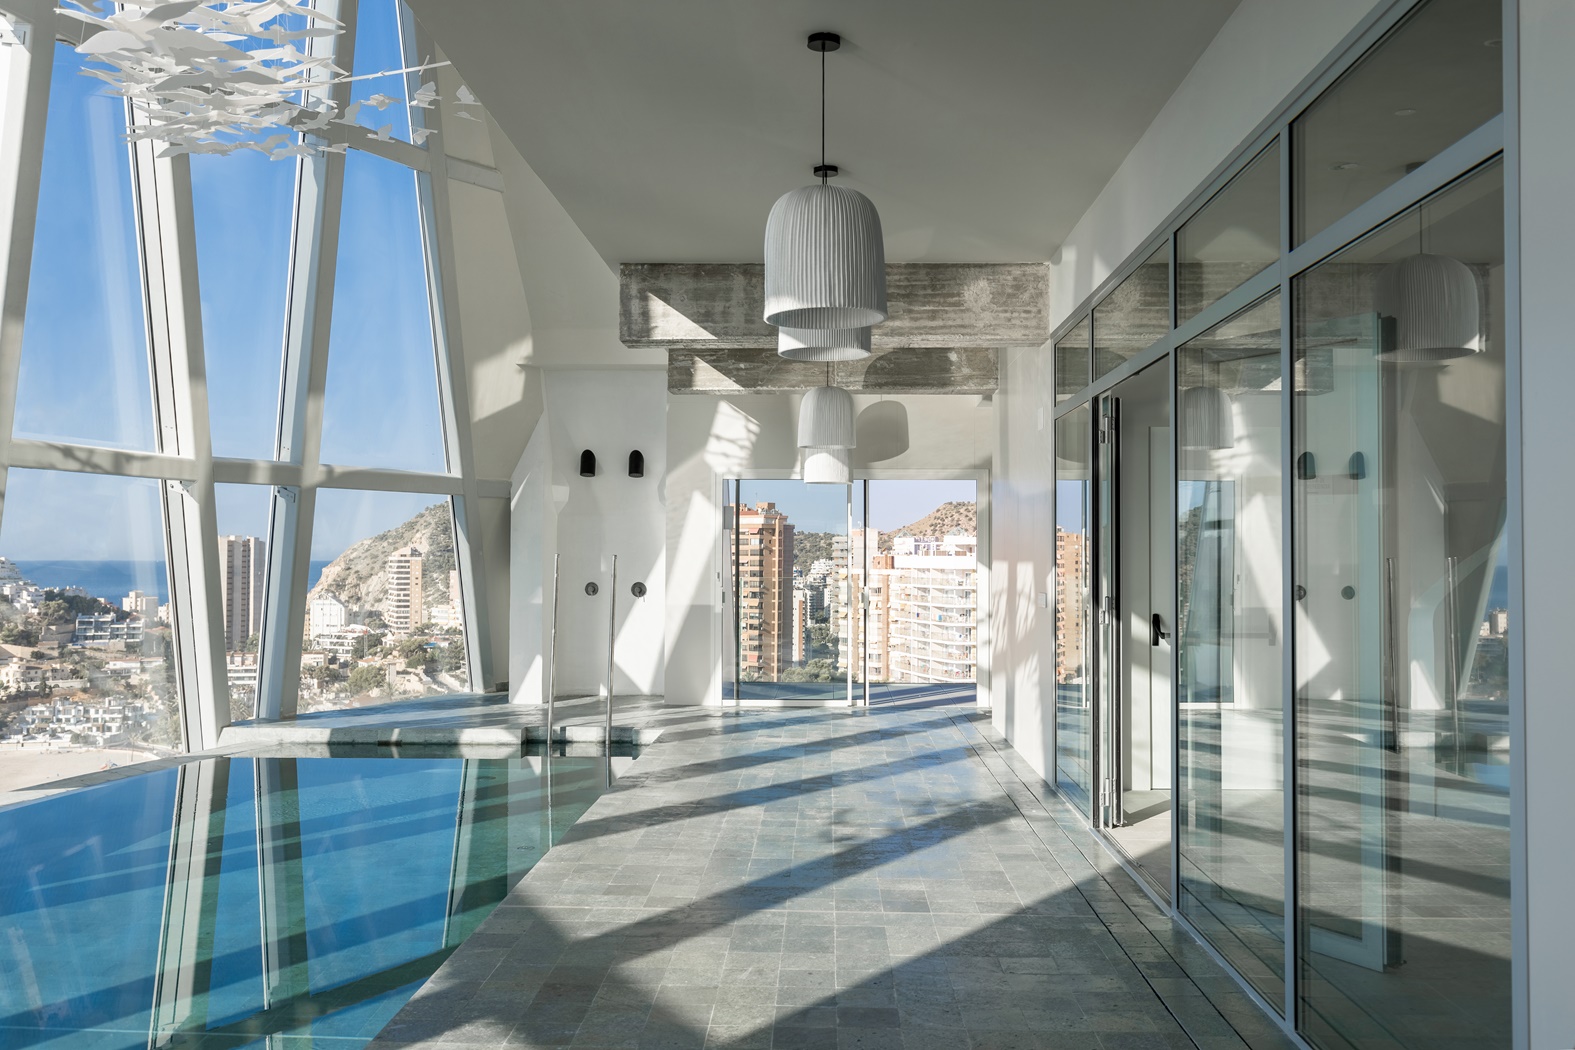 Appartement moderne de nouvelle construction à vendre à Benidorm, Costa Blanca